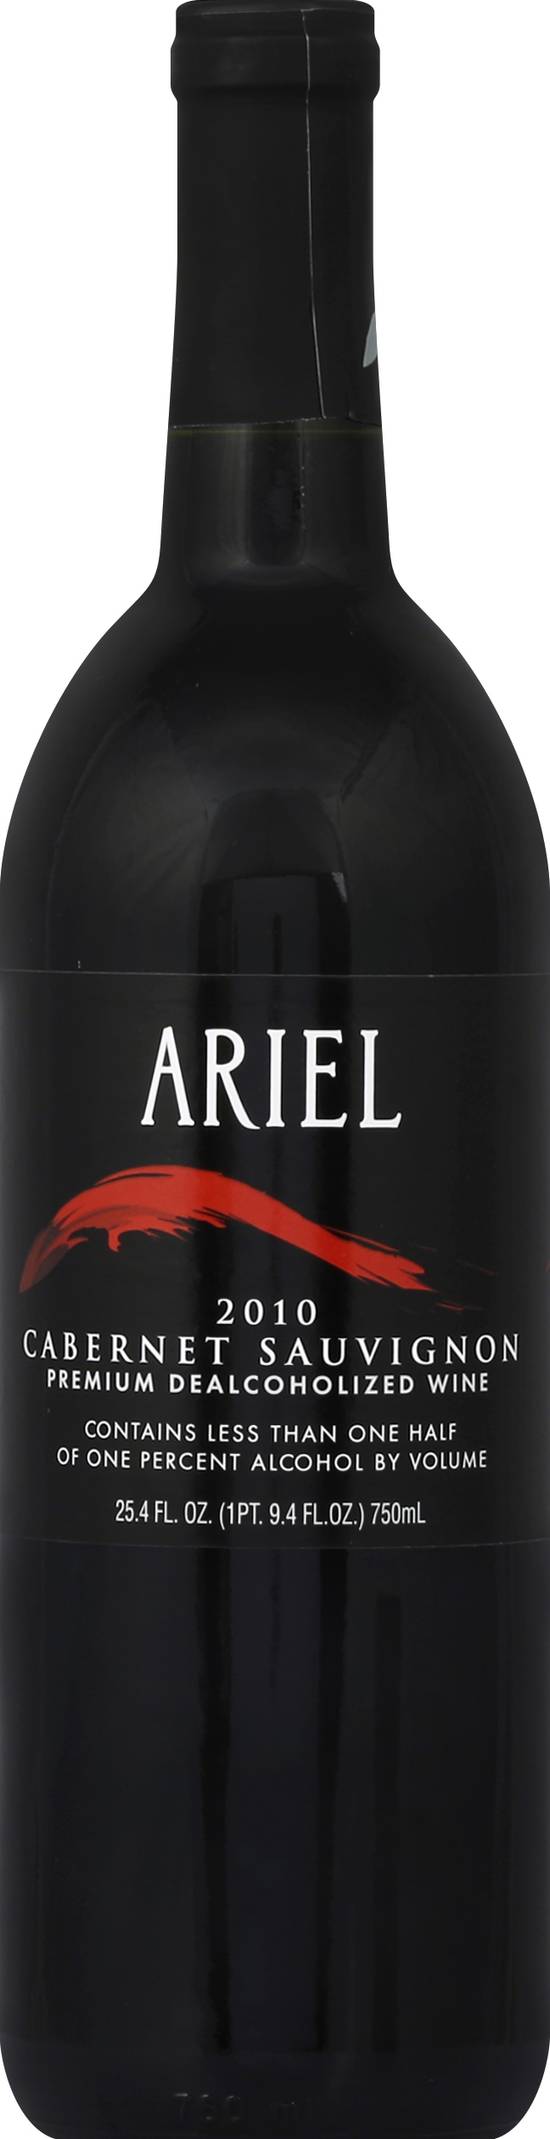 Ariel Dealcoholized Cabernet Sauvignon Wine (750 ml)